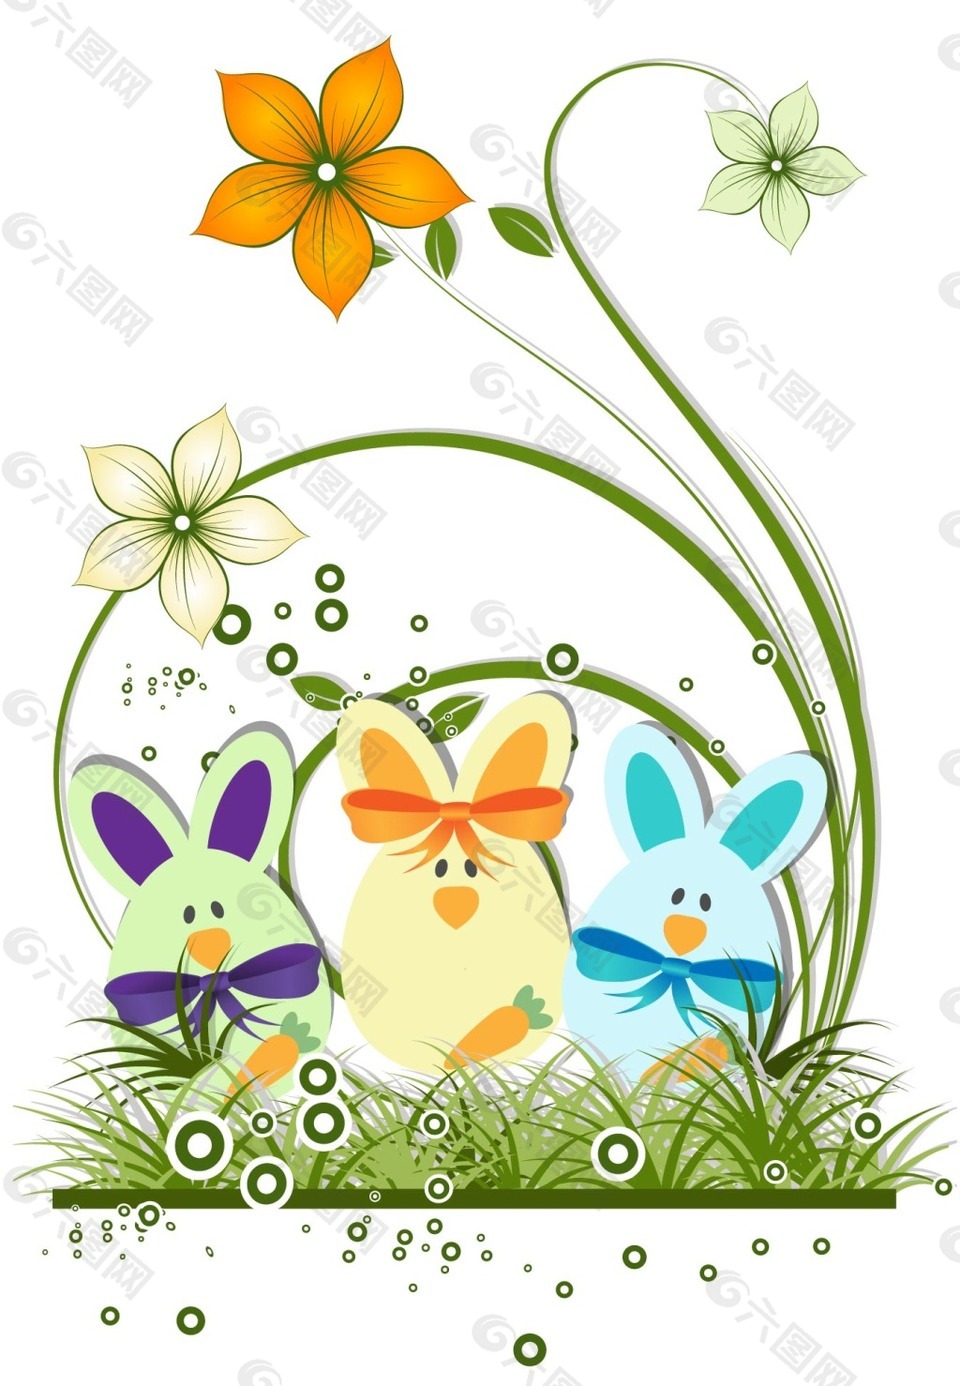 兔子与花朵装饰复活节背景矢量素材下载